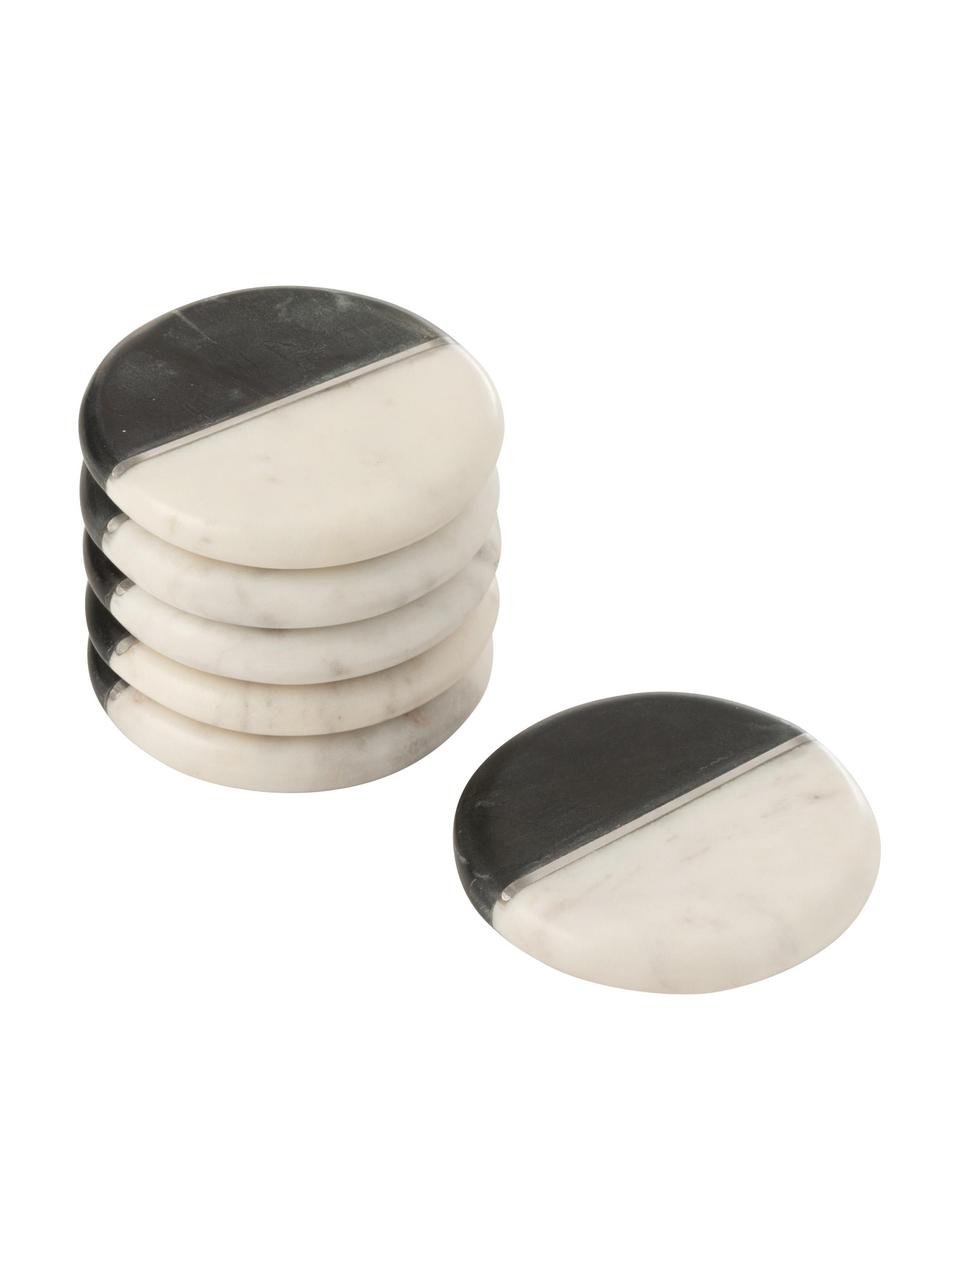 Zweifarbige Marmor-Untersetzer Mandi, 6 Stück, Marmor, Schwarz & Weiß marmoriert, Silberfarben, Ø 10 cm